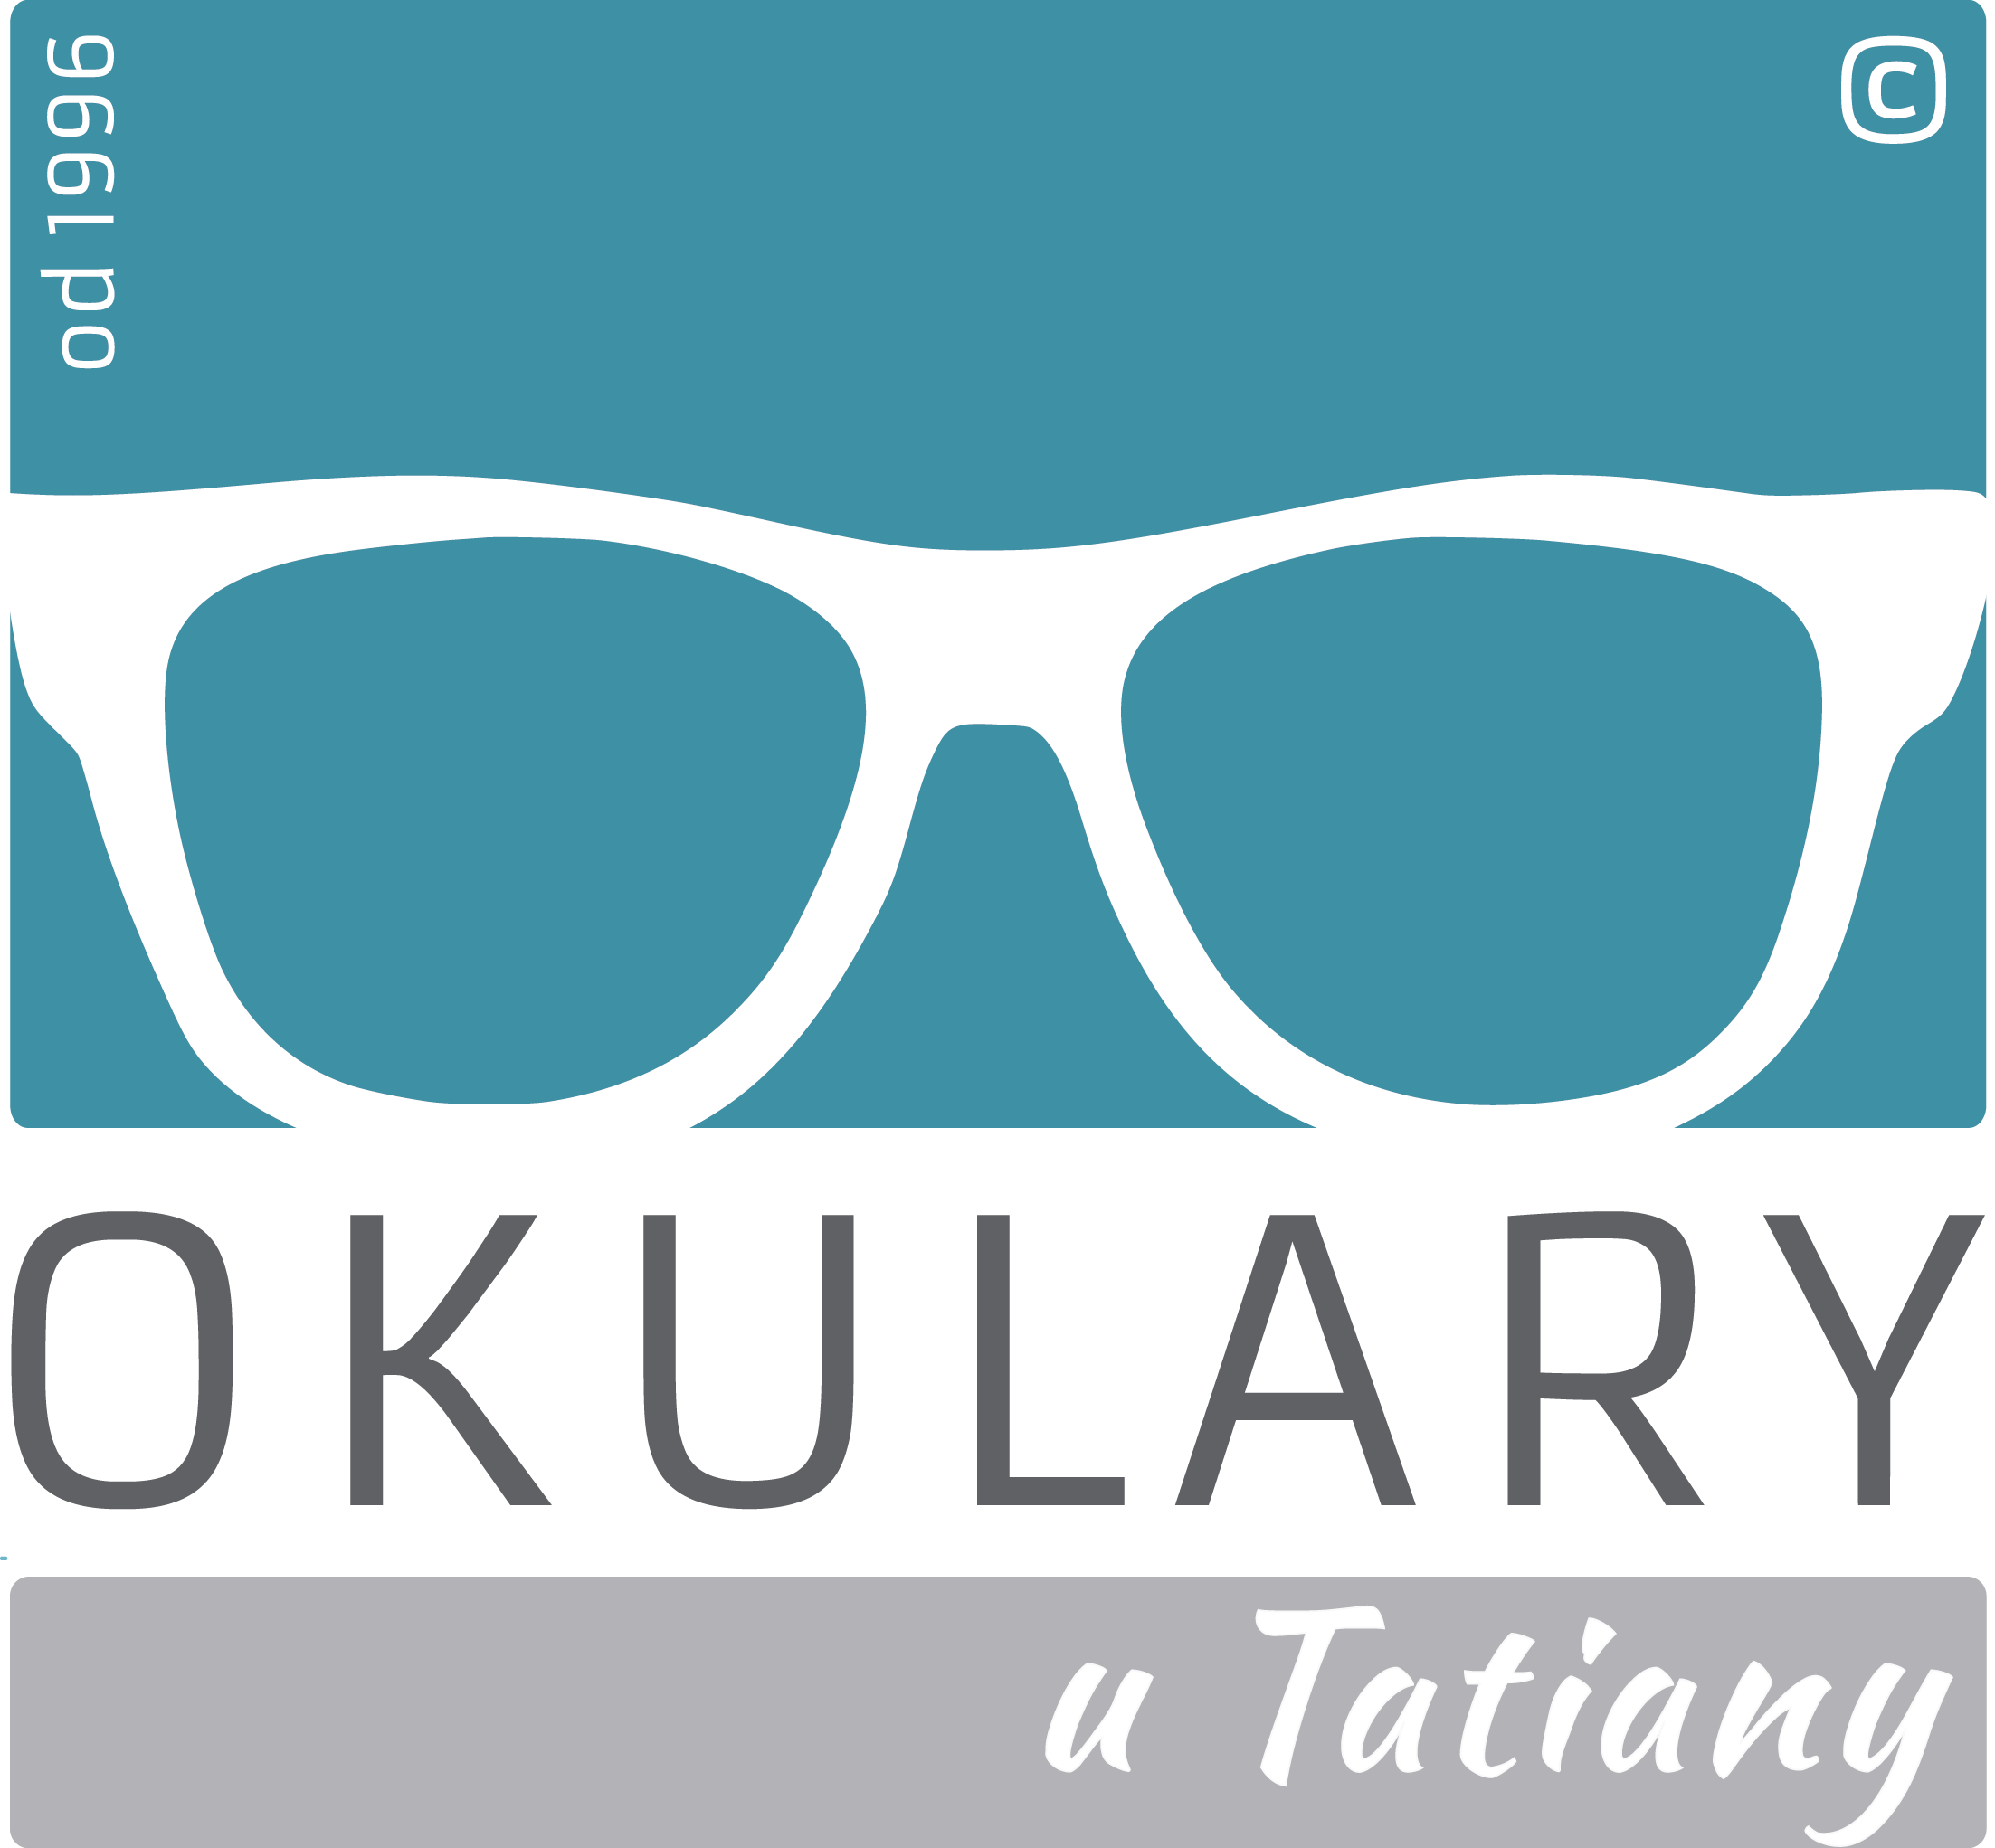 Okulary u Tatiany